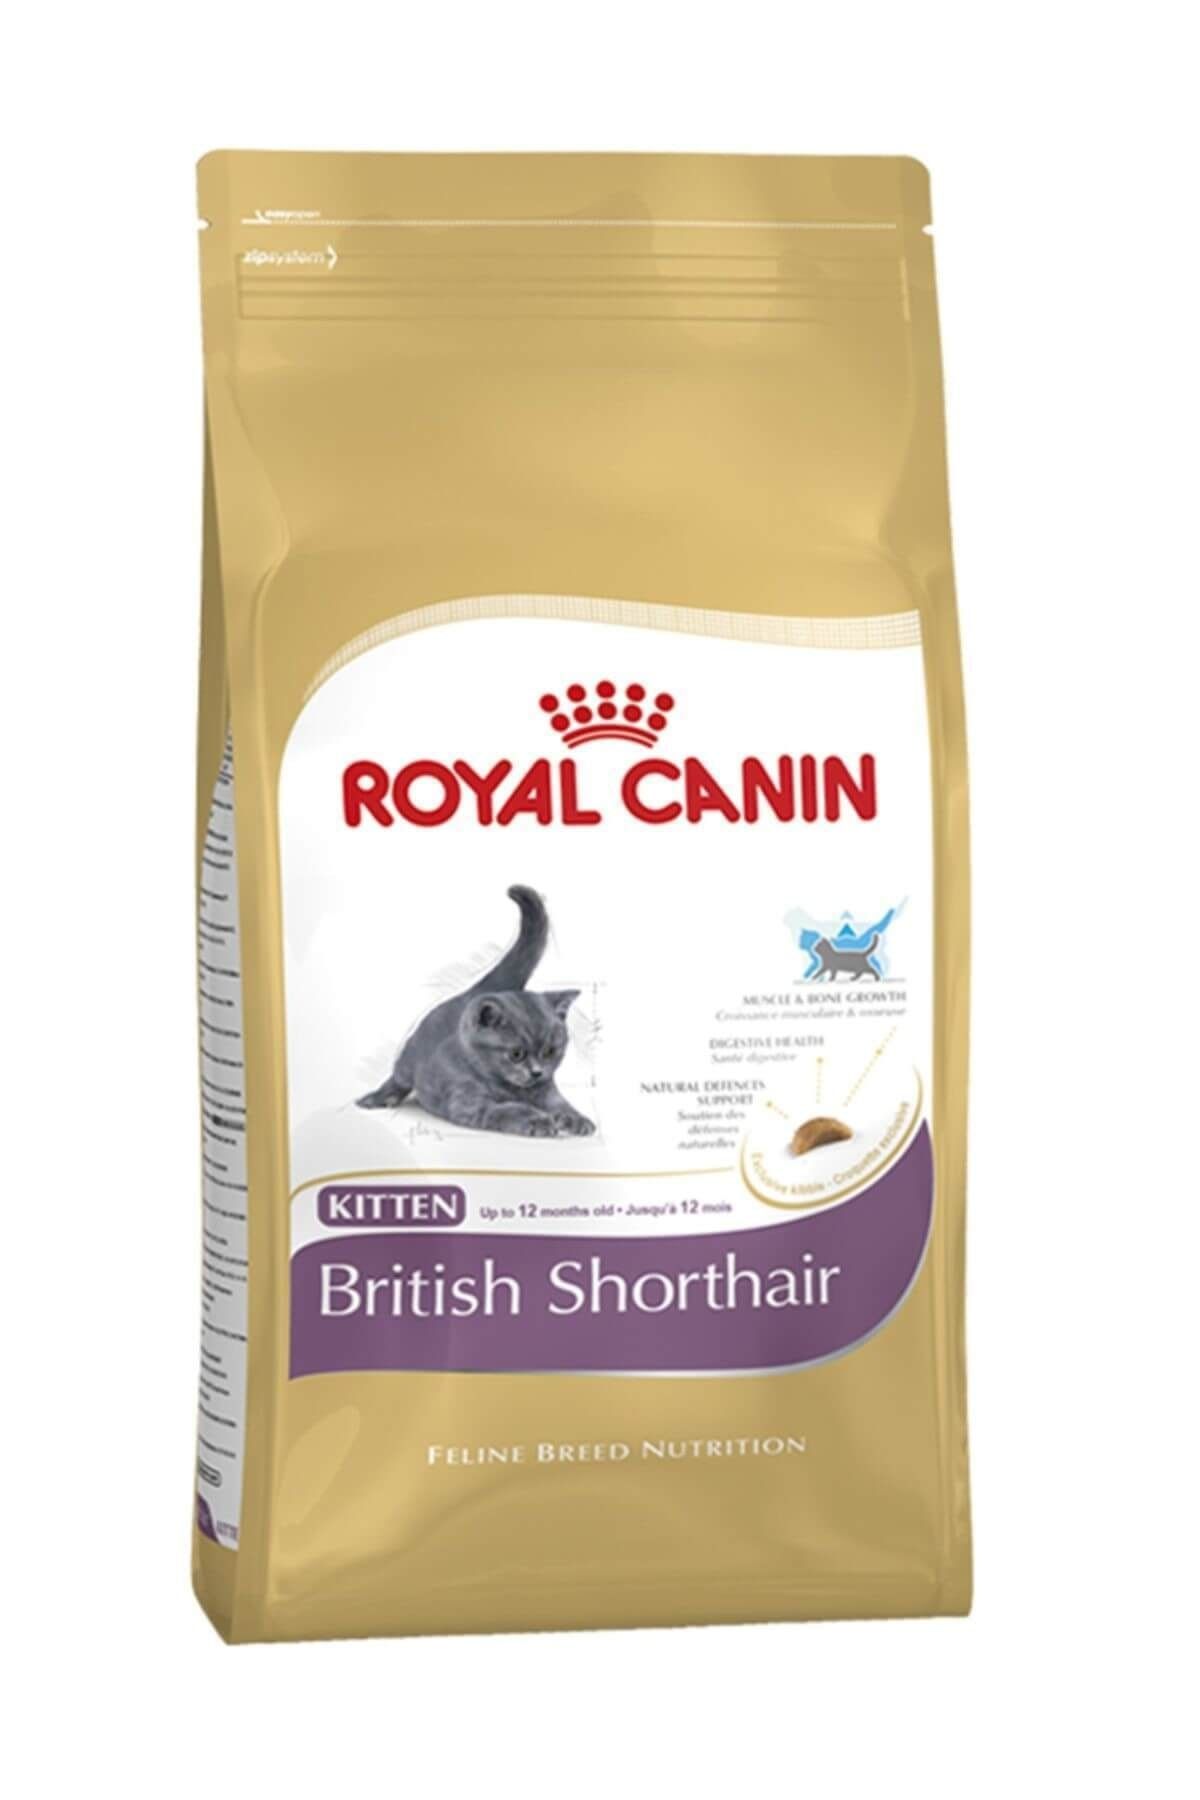 Royal Canin British Shorthair İçin Özel Yavru Kedi Mamasi 2 kg